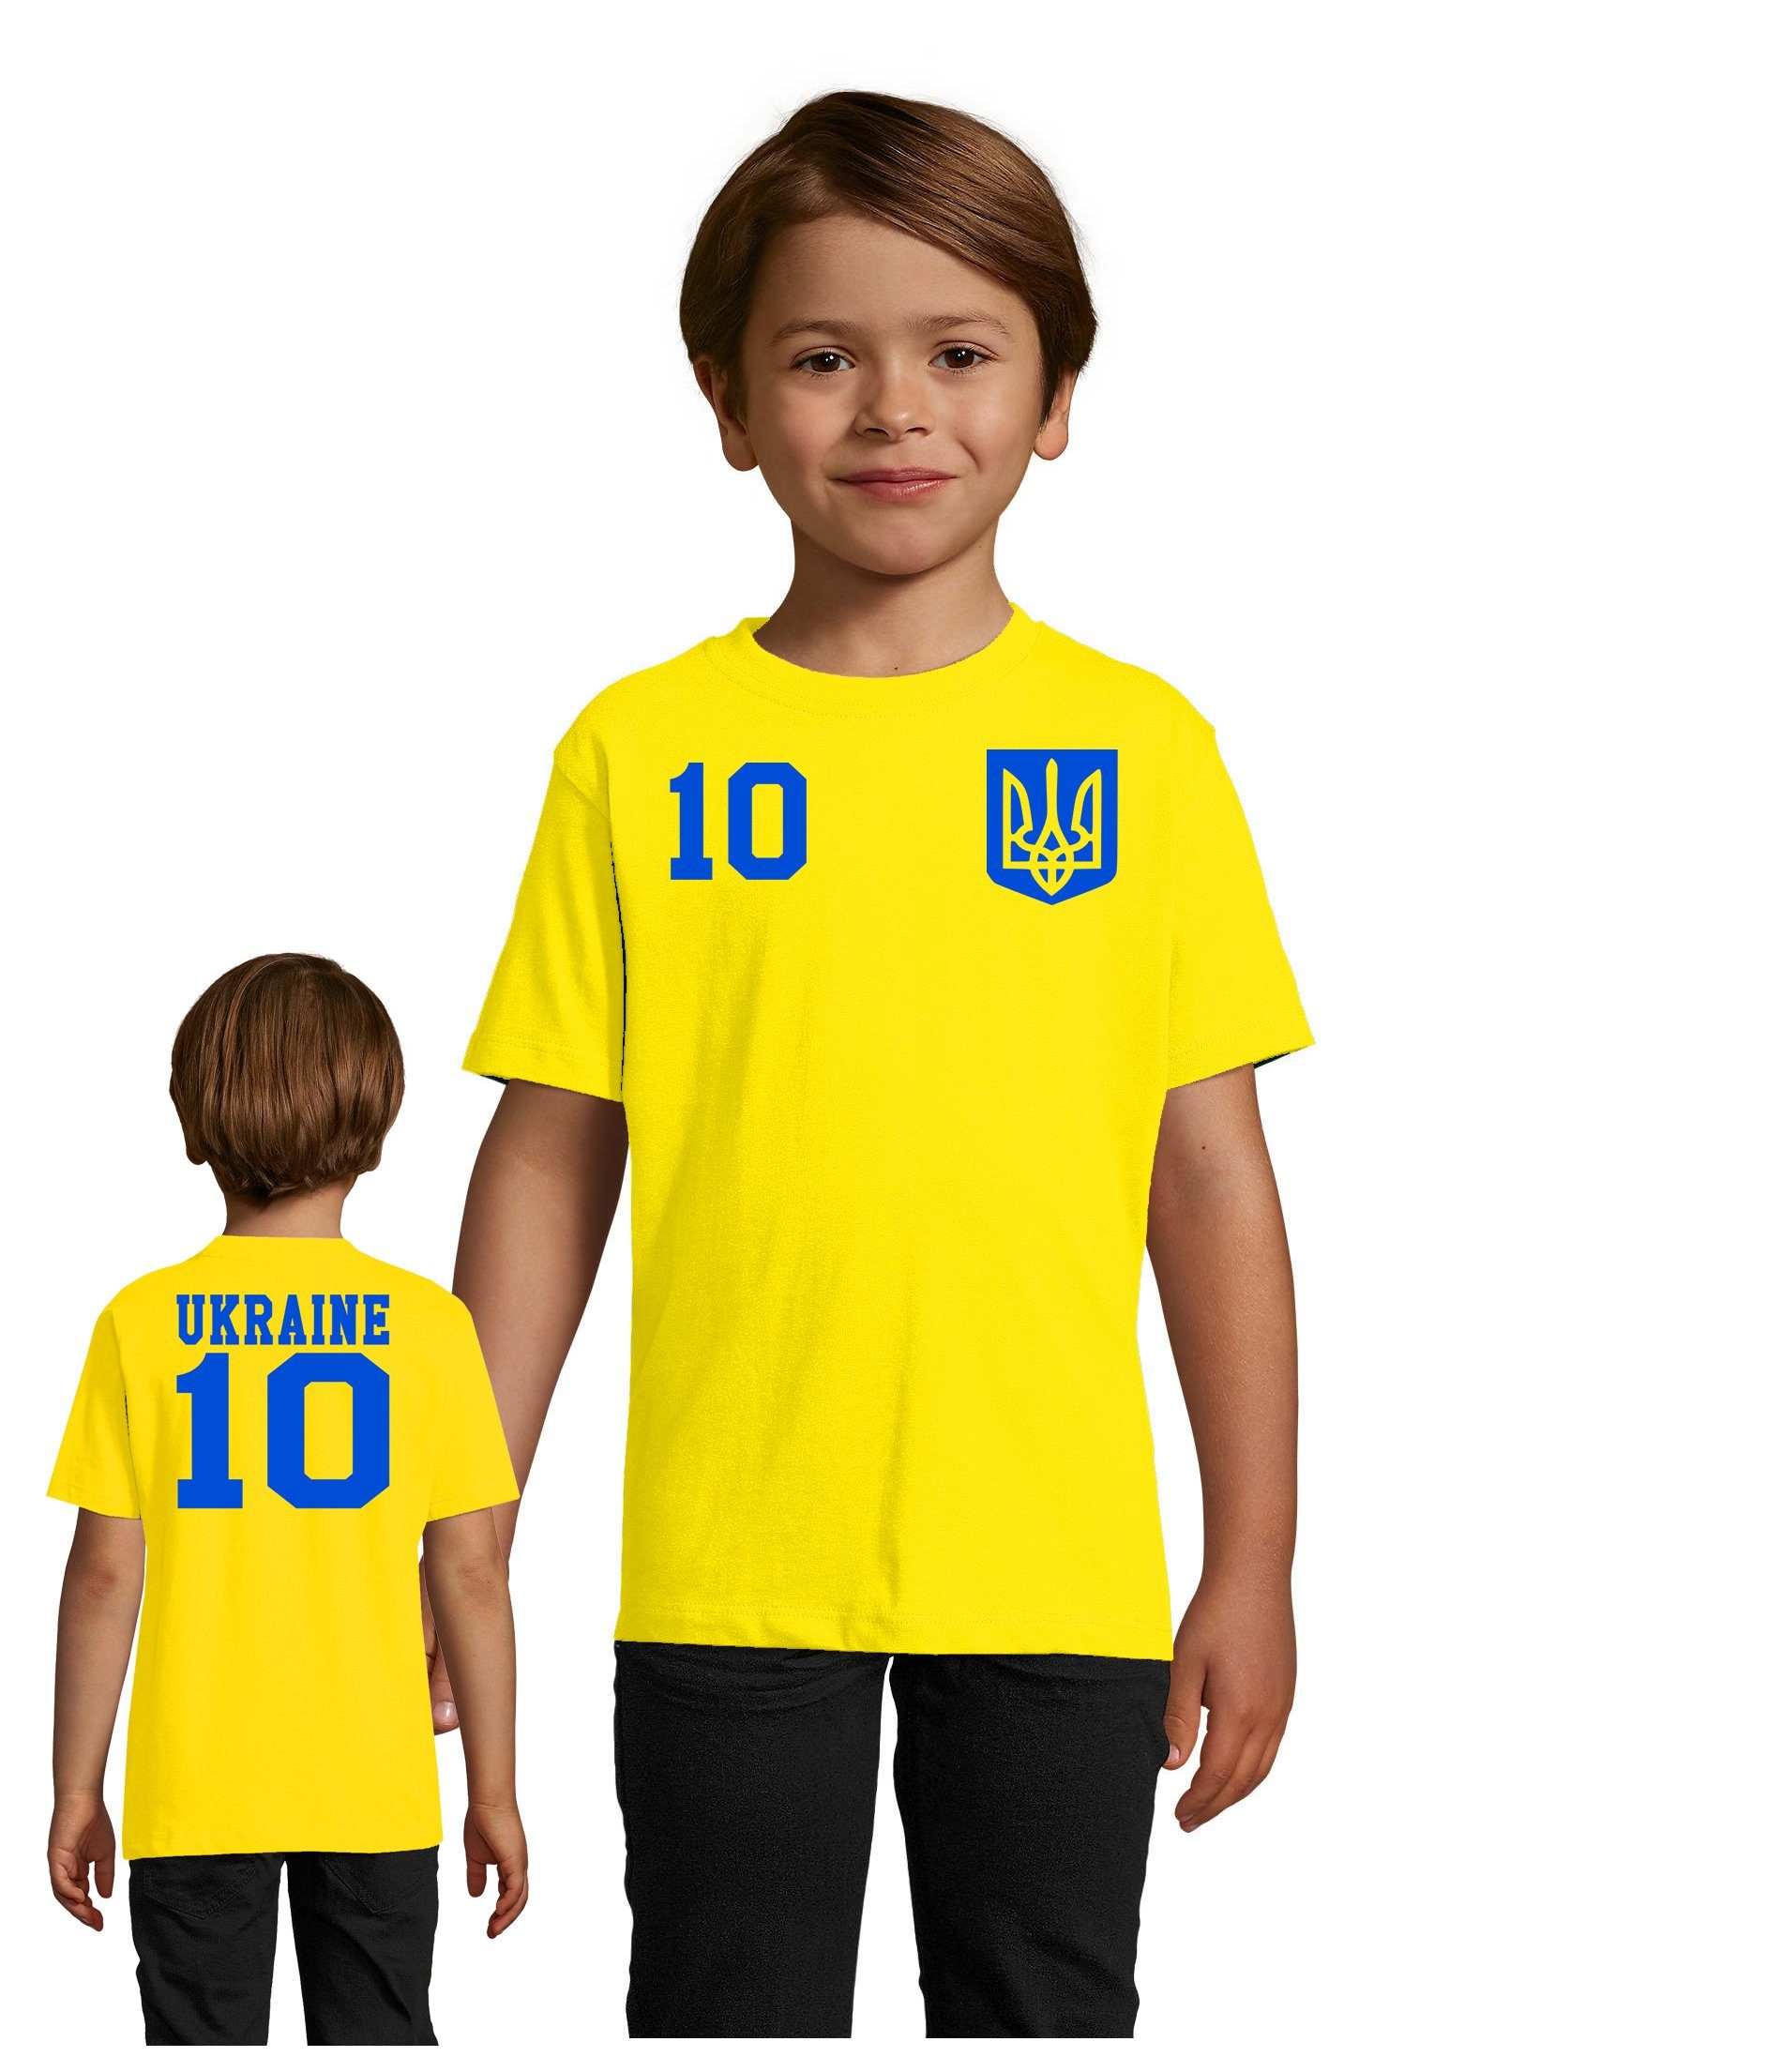 Blondie & Brownie T-Shirt Kinder Ukraine Ukraina Sport Trikot Fußball Meister WM Europa EM